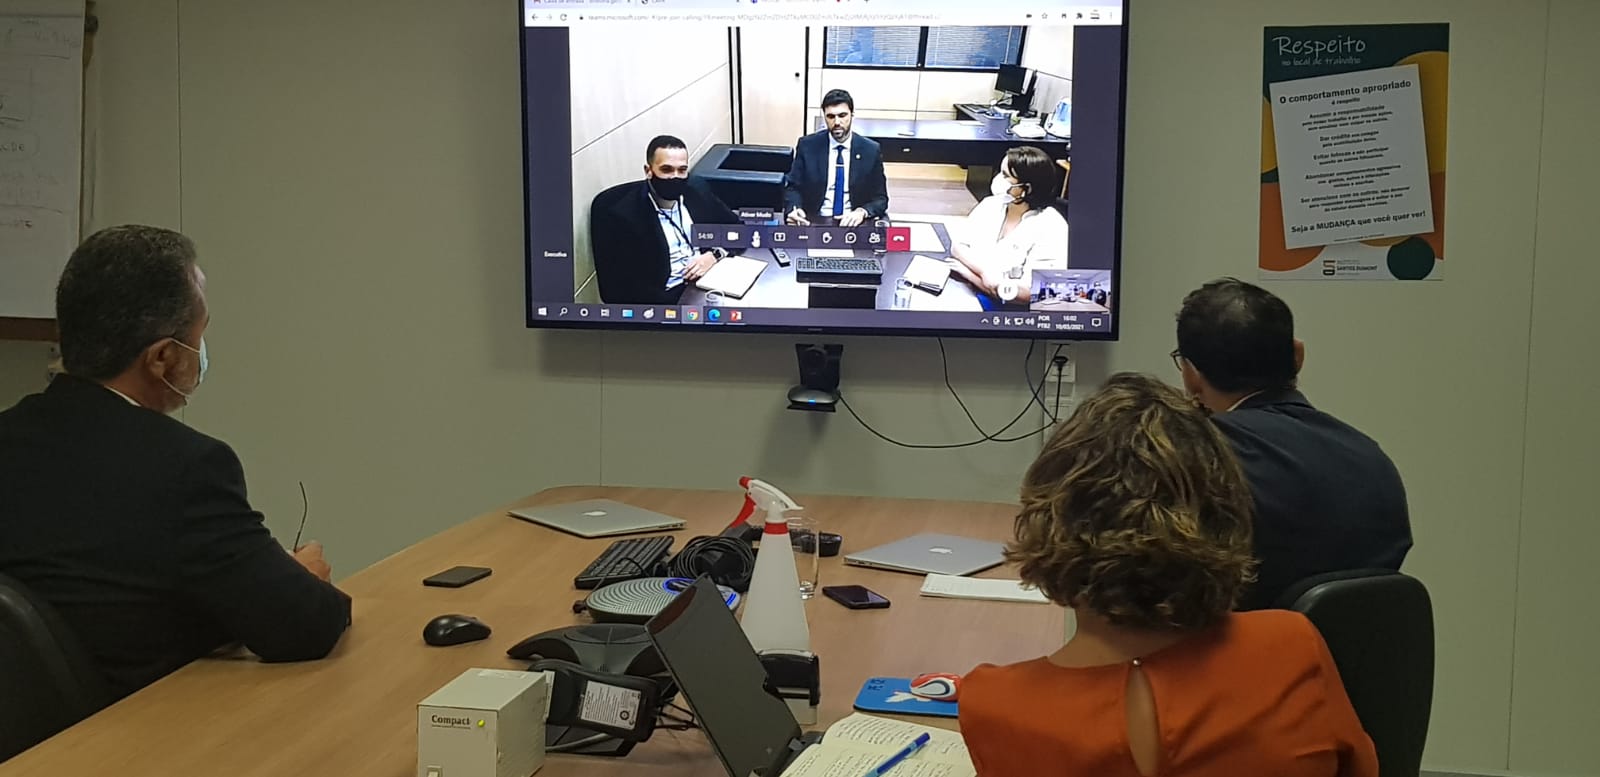 10.03.2021 - Dirigentes do ISD em videoconferência com o MEC para retomada das negociações sobre renovação do contrato (2)